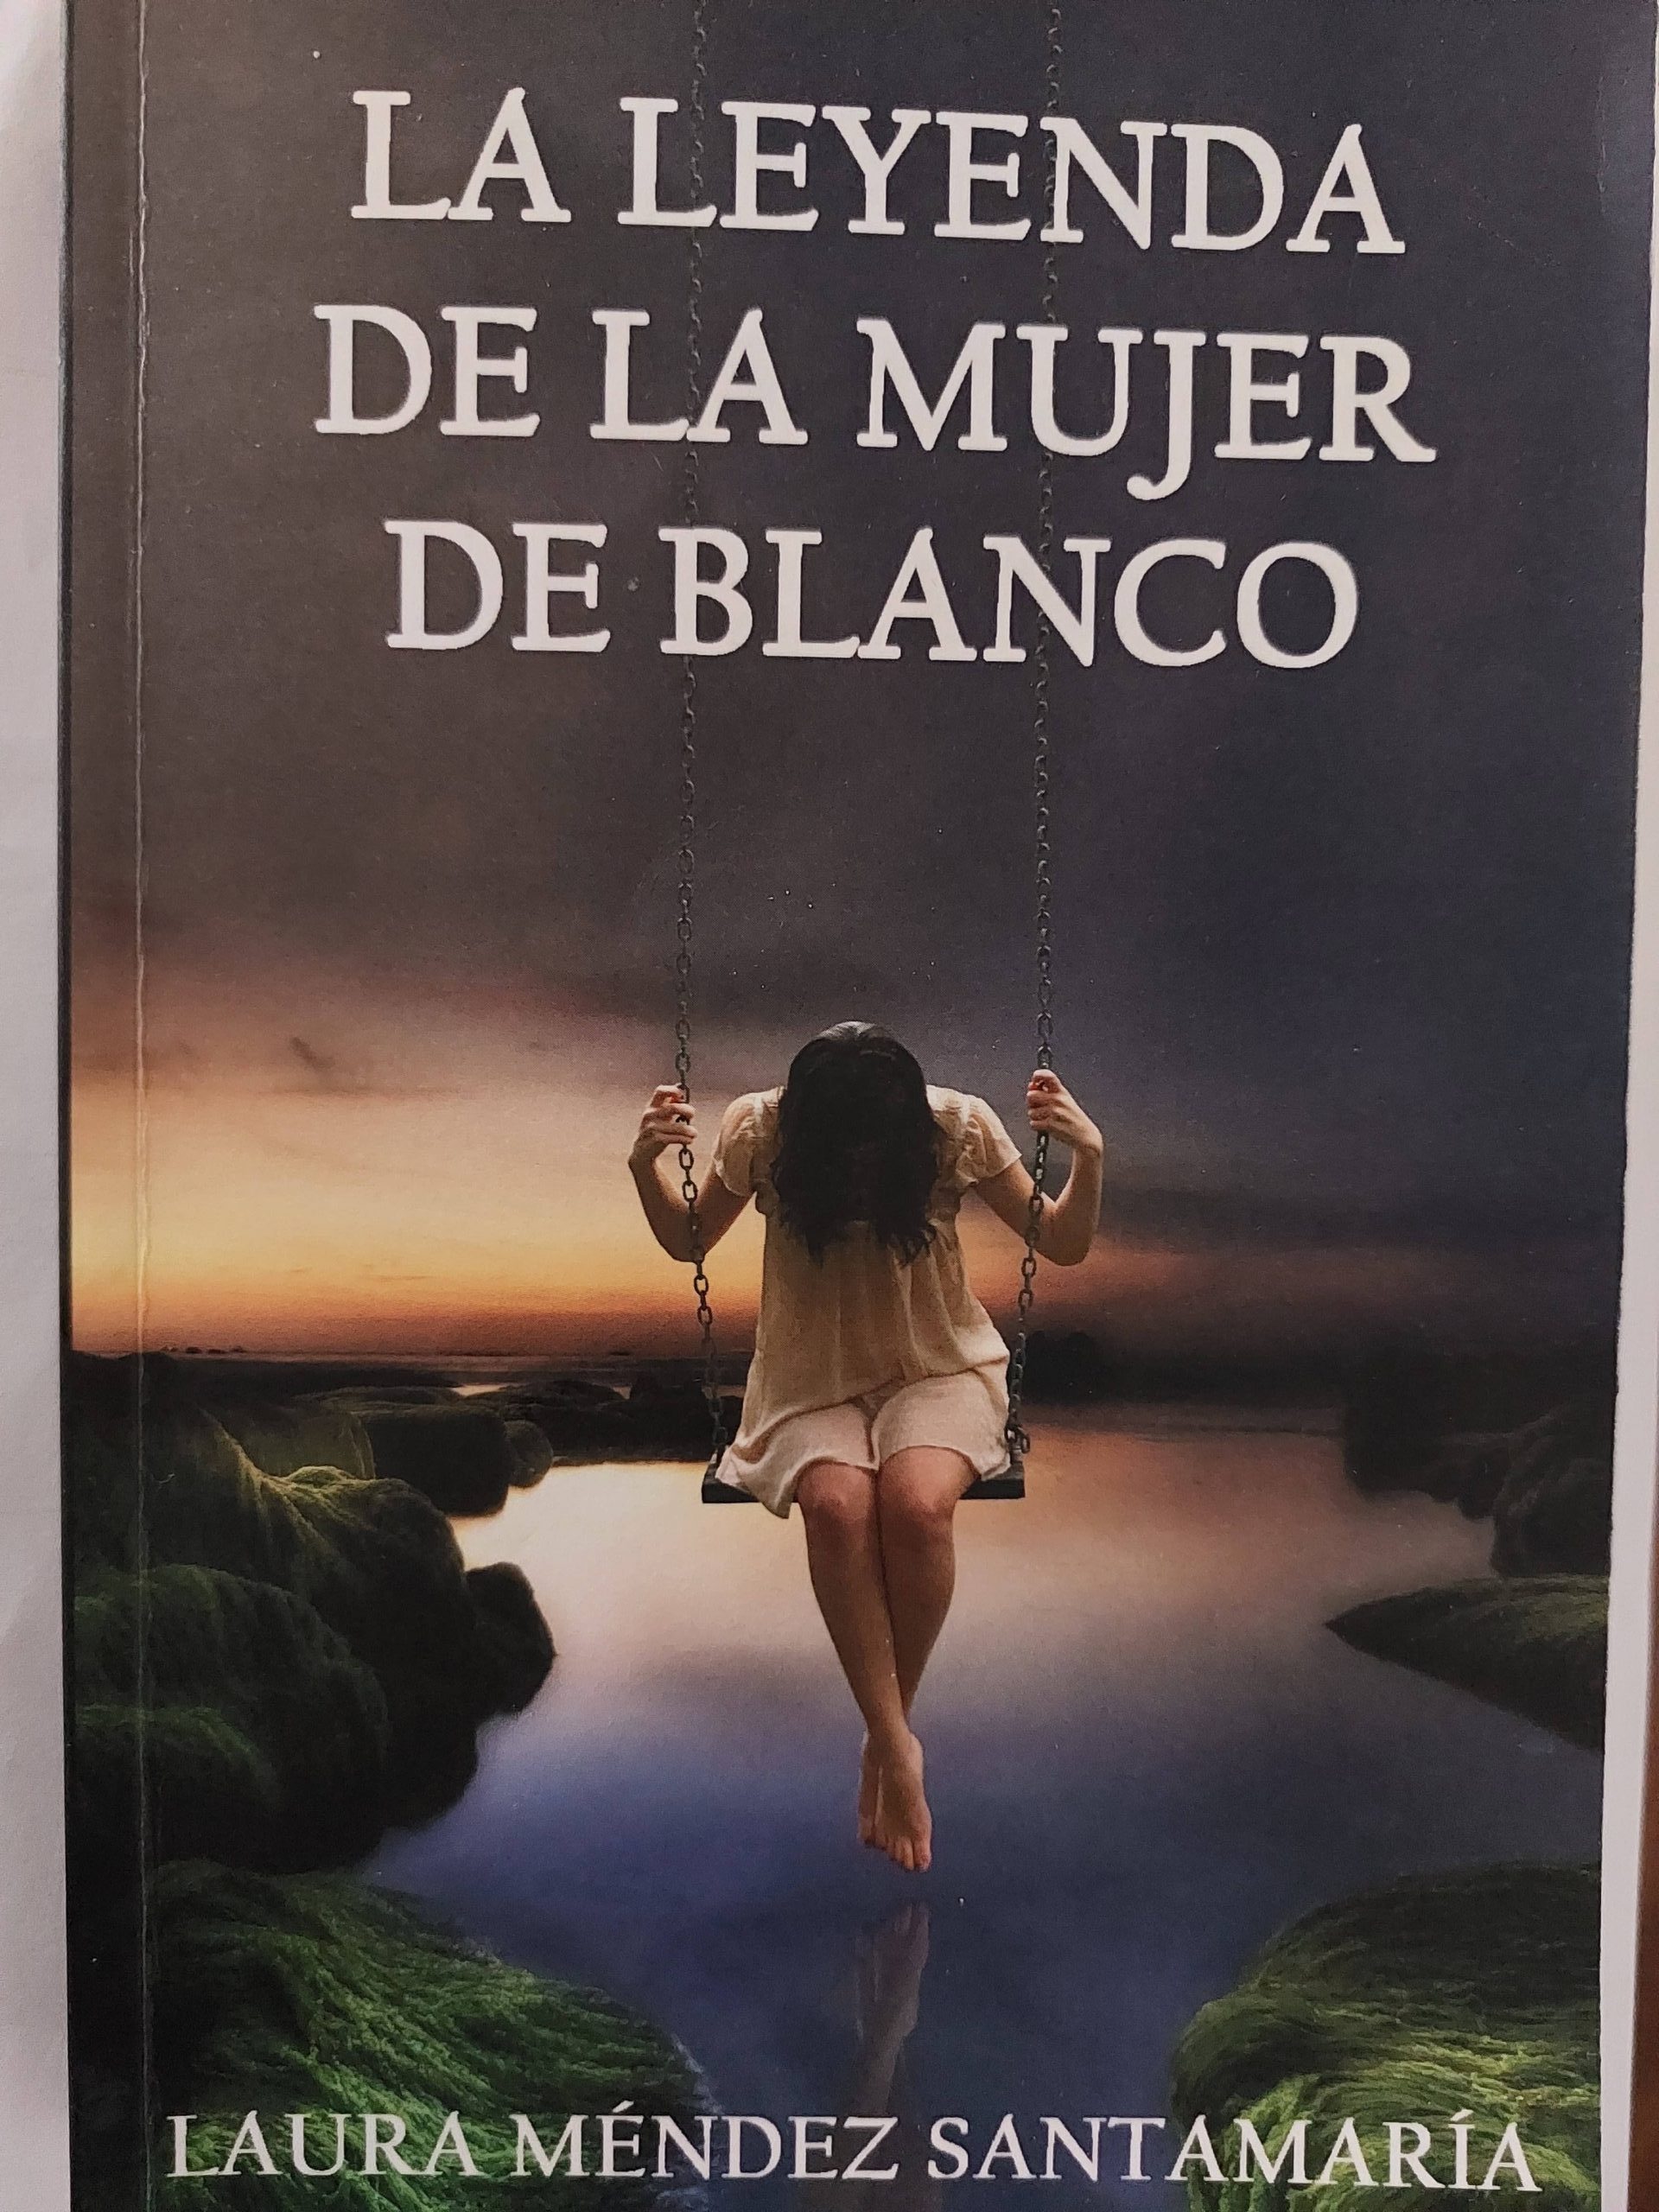 Reseña de «La leyenda de la mujer de blanco» de Laura Méndez Santamaría | Por Dayana Montoro Hernández